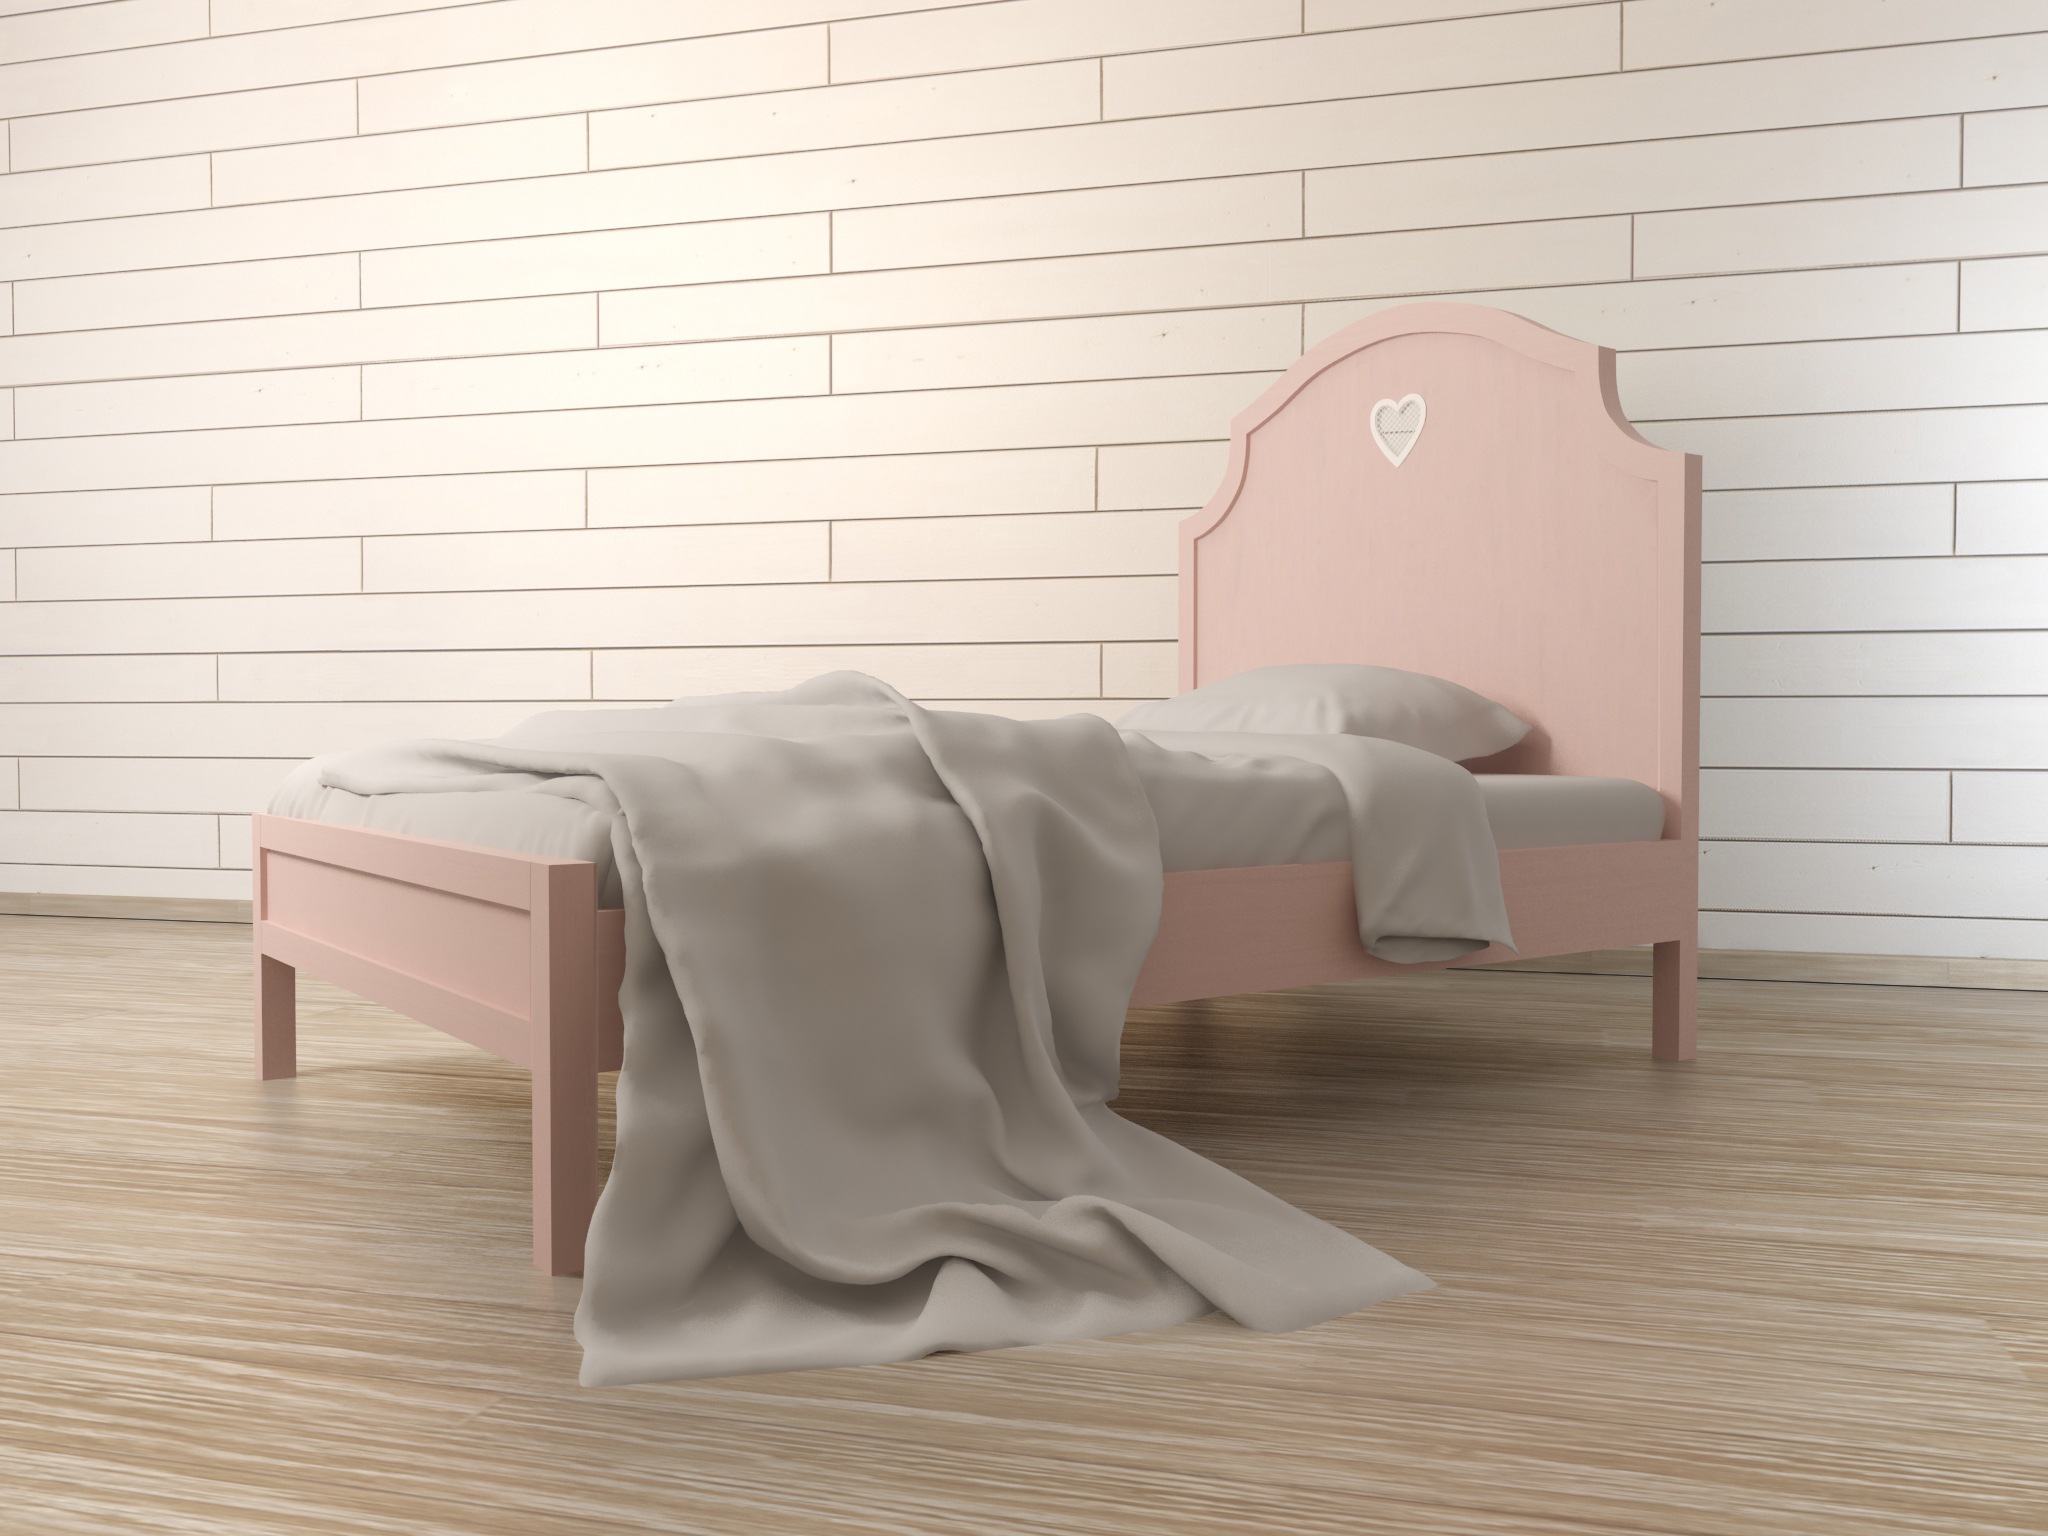 Кровать в стиле Прованс "Adelina" в розовом цвете Этажерка